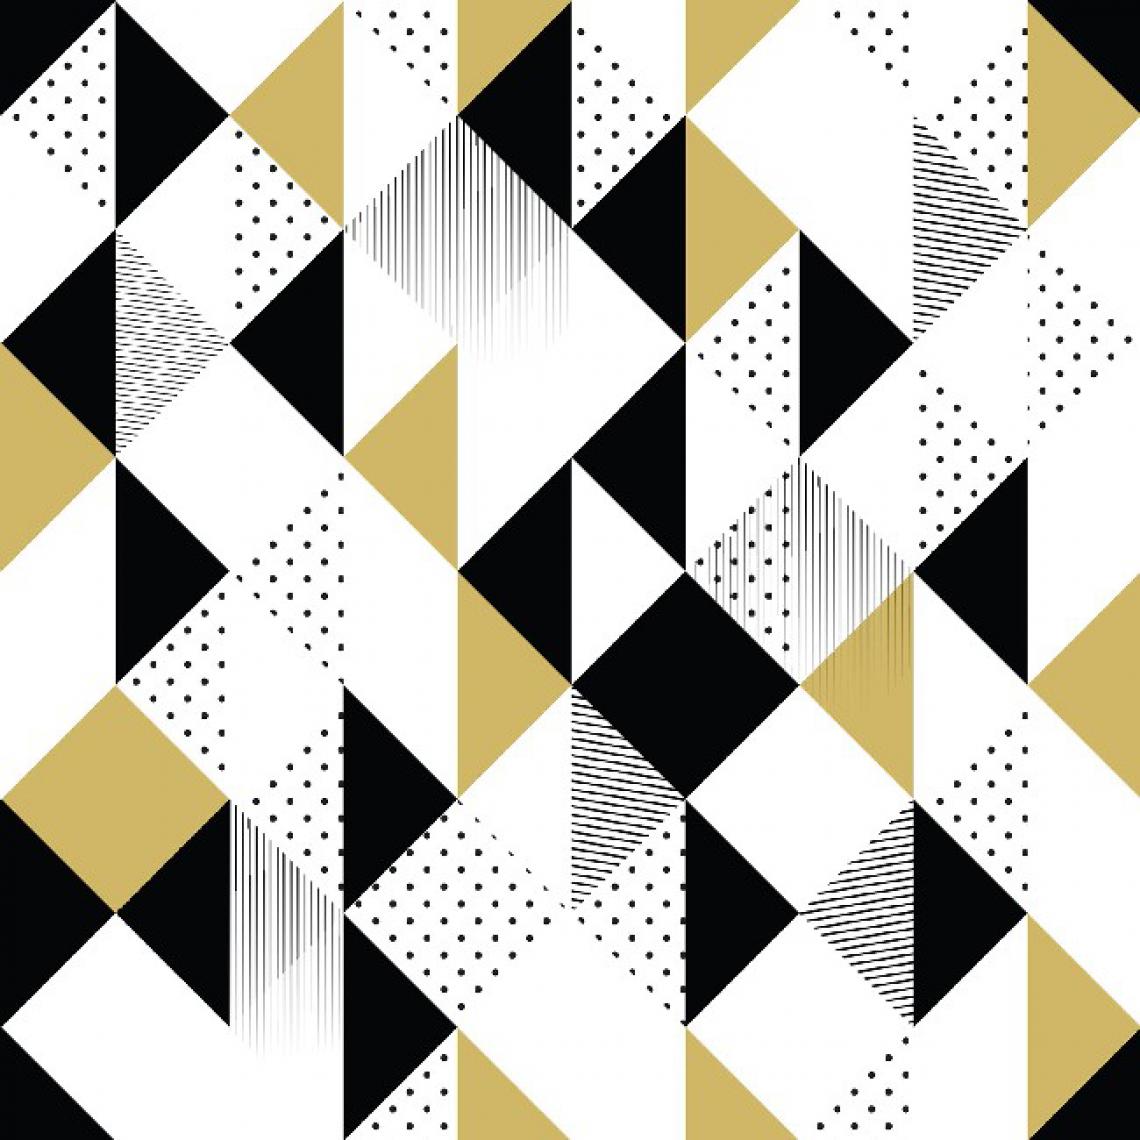 Homemania - HOMEMANIA Tapis Imprimé Geometric Patterns - Géométrique - Décoration de Maison - Antidérapant - Pour Salon, séjour, chambre à coucher - Multicolore en Polyester, Coton, 80 x 120 cm - Tapis